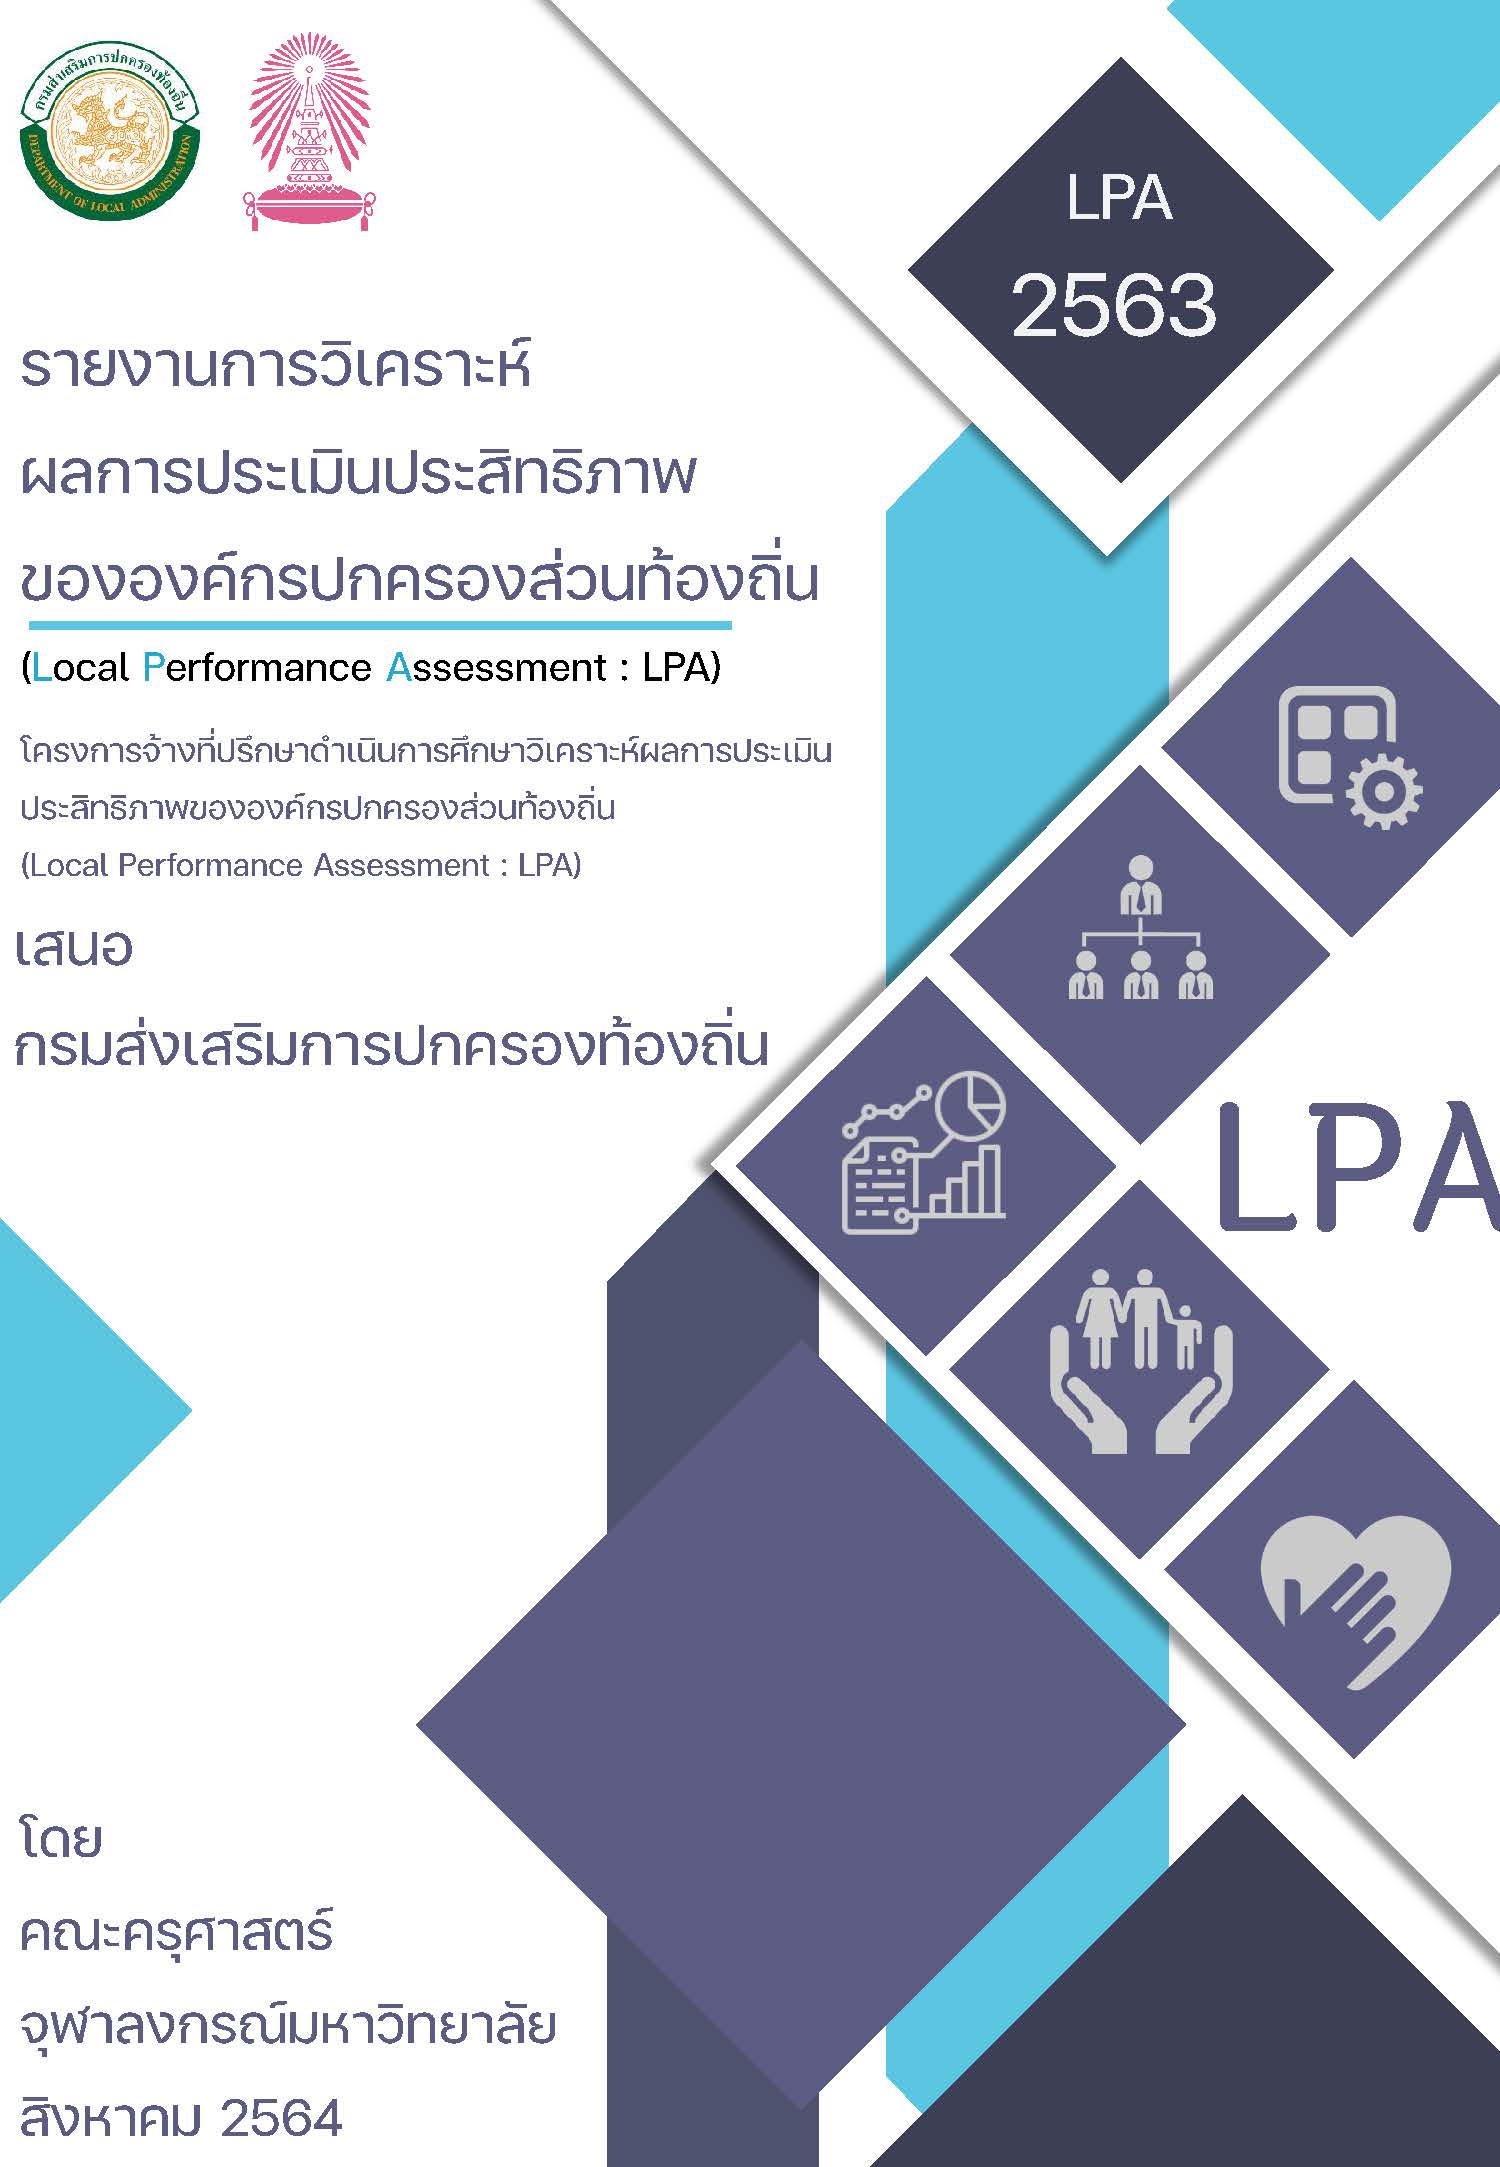 การประเมินประเมินประสิทธิภาพ ขององค์กรปกครองส่วนท้องถิ่น (Local Performance Assessment: LPA) ประจำปี 2563